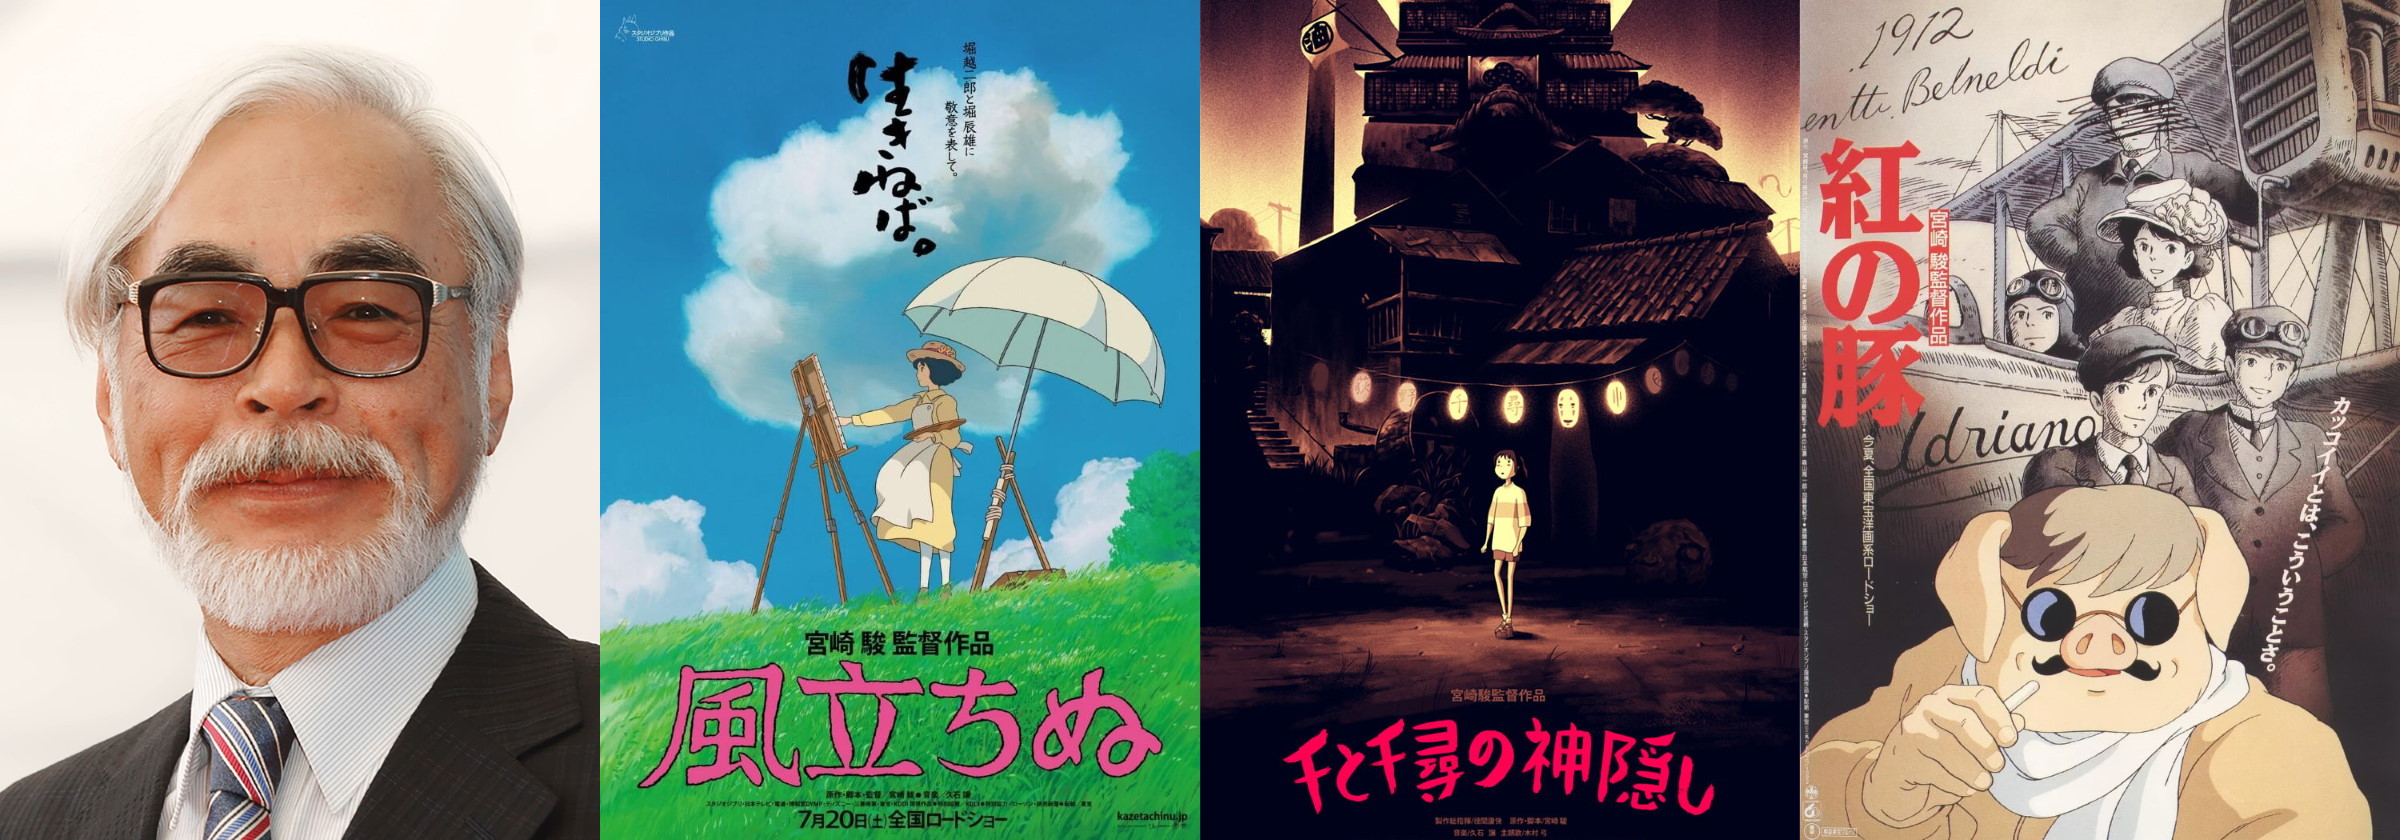 Director B-Side: Hayao Miyazaki's 'Porco Rosso' - mxdwn Movies